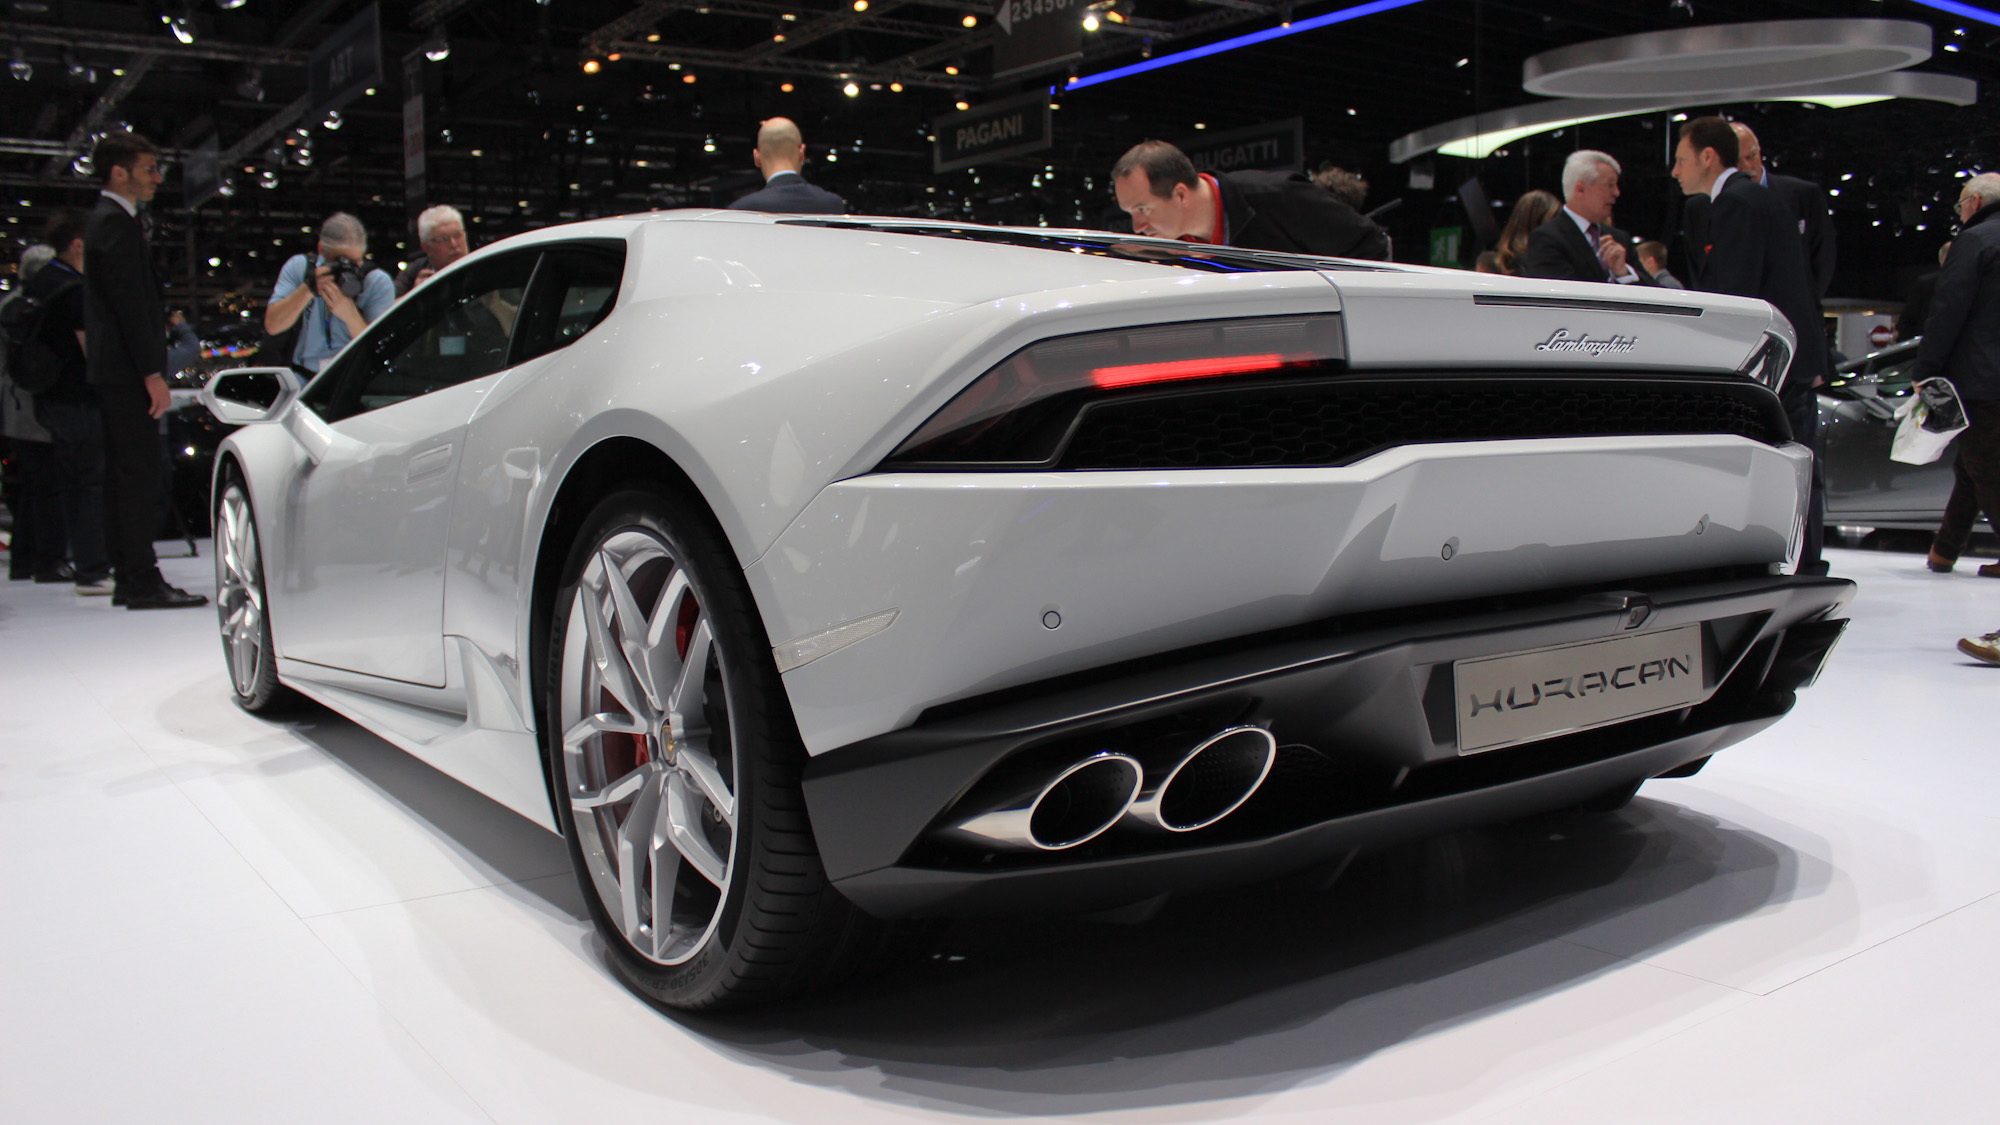 Lamborghini Huracán, 2014 Geneva Motor Show